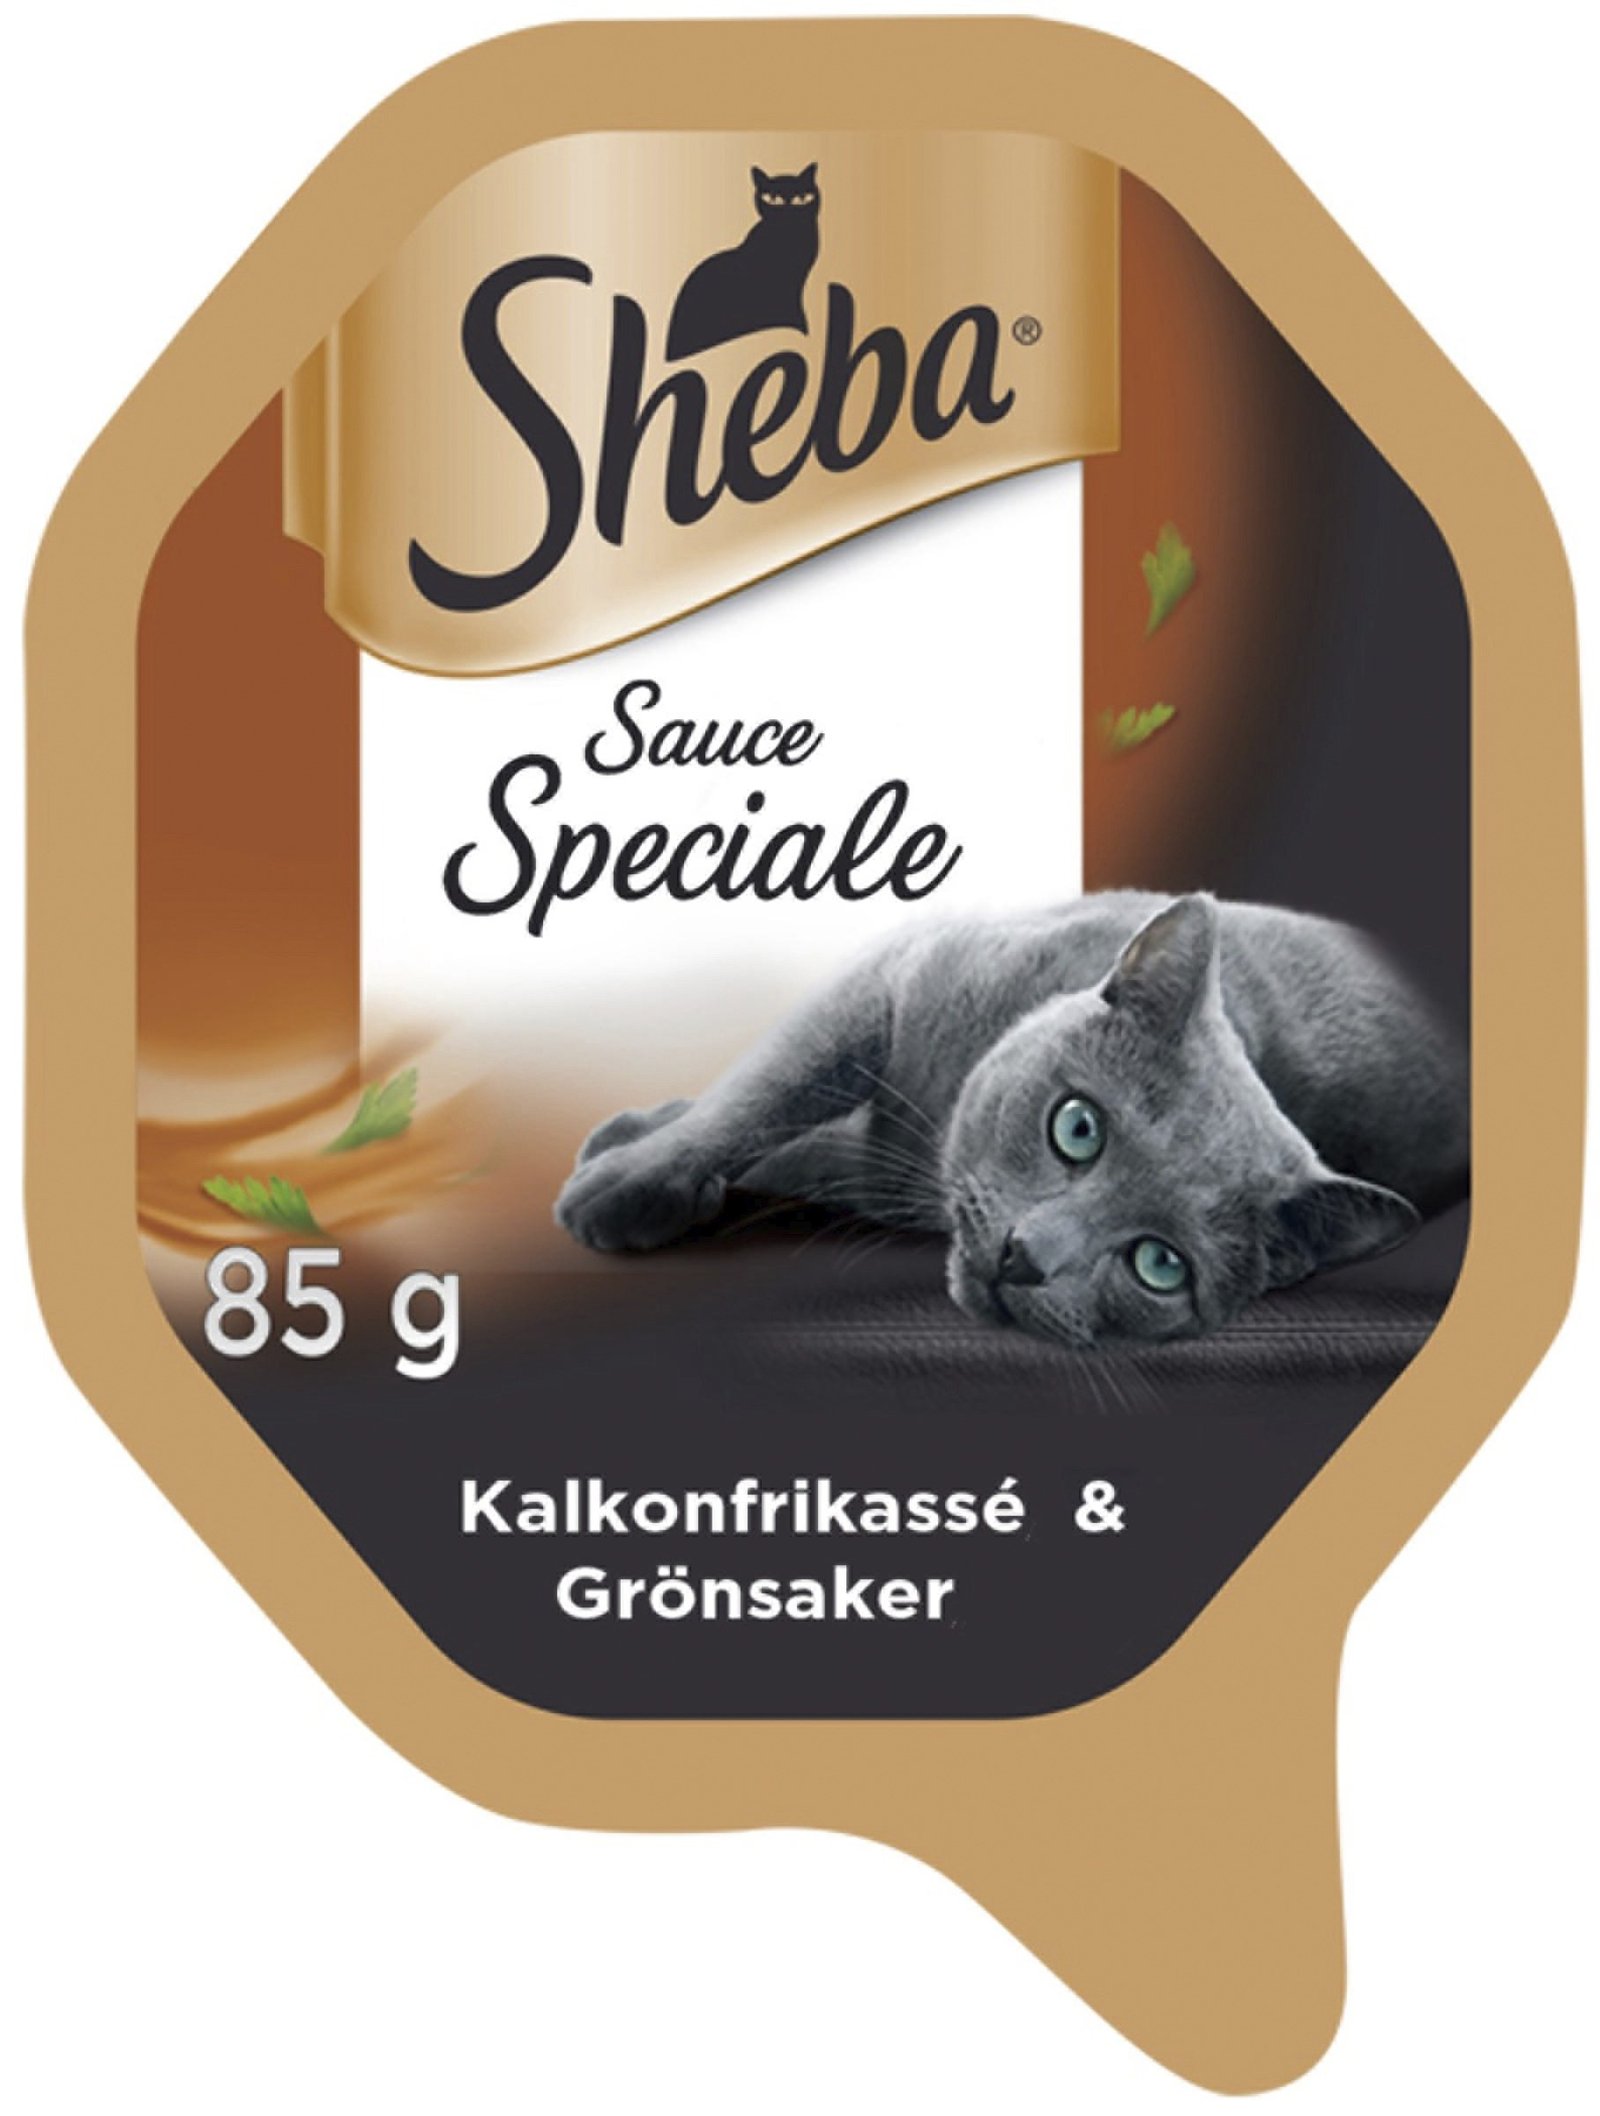 Sheba Sauce Speciale Kalkonfrikassé / Grönsaker 85g